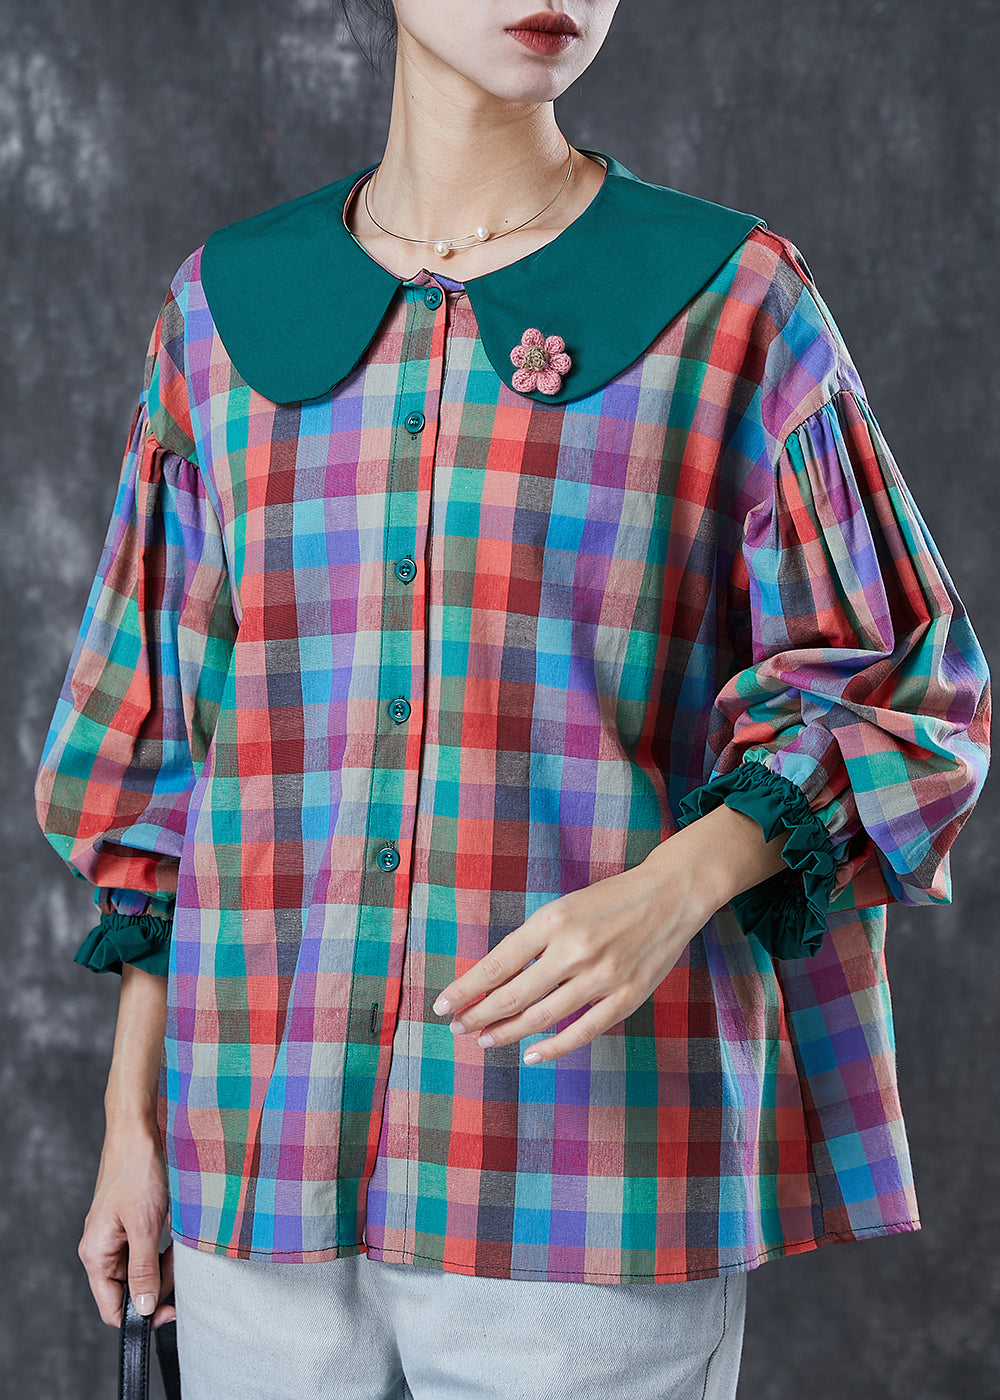 Italian Colorblock Peter Pan Collar Plaid Cotton Shirt Tops Spring